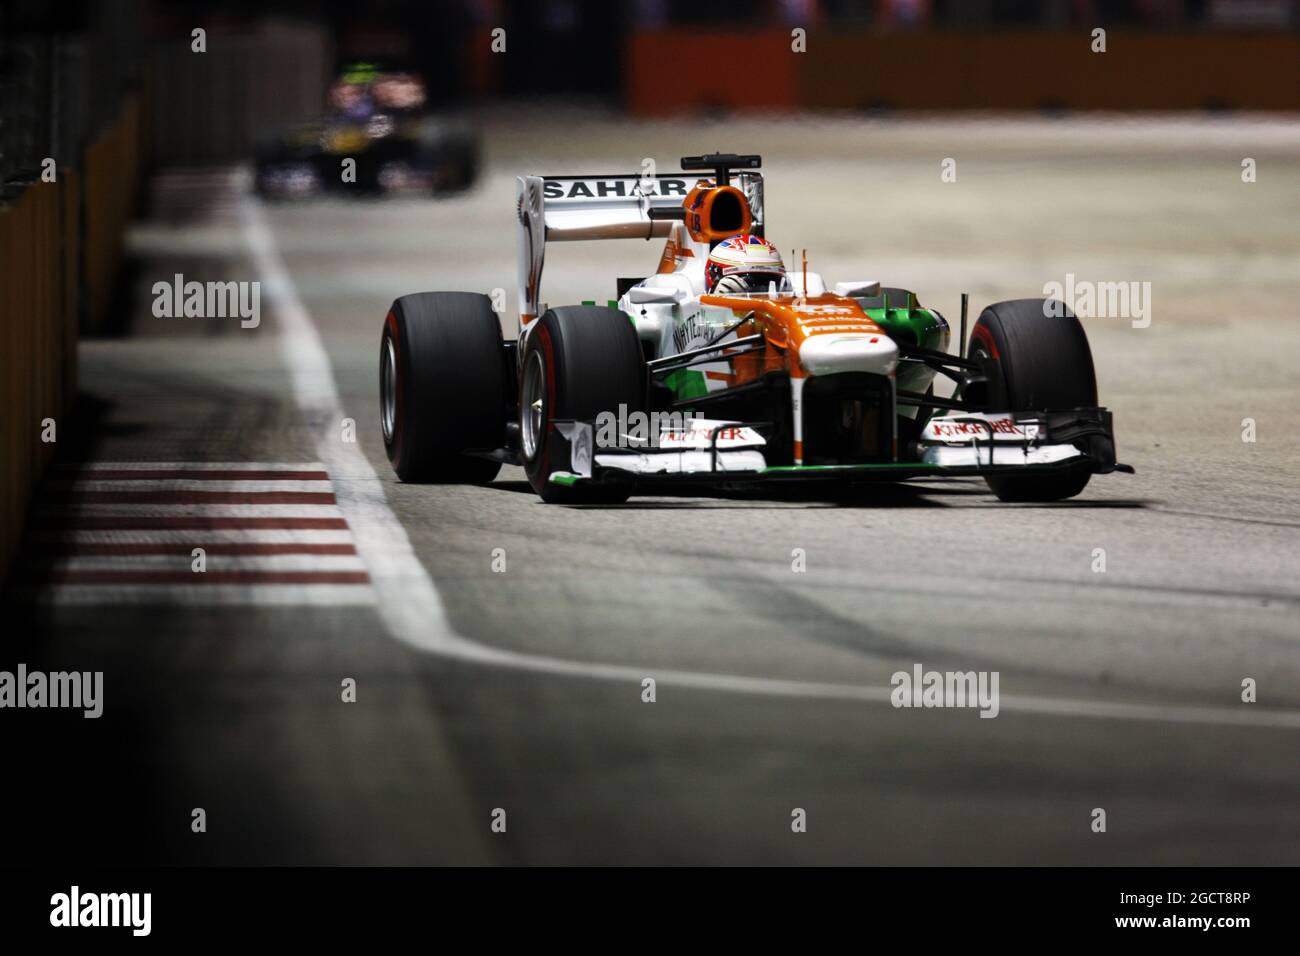 Paul di resta (GBR) Sahara Force India VJM06. Gran Premio di Singapore, domenica 22 settembre 2013. Circuito Marina Bay Street, Singapore. Foto Stock